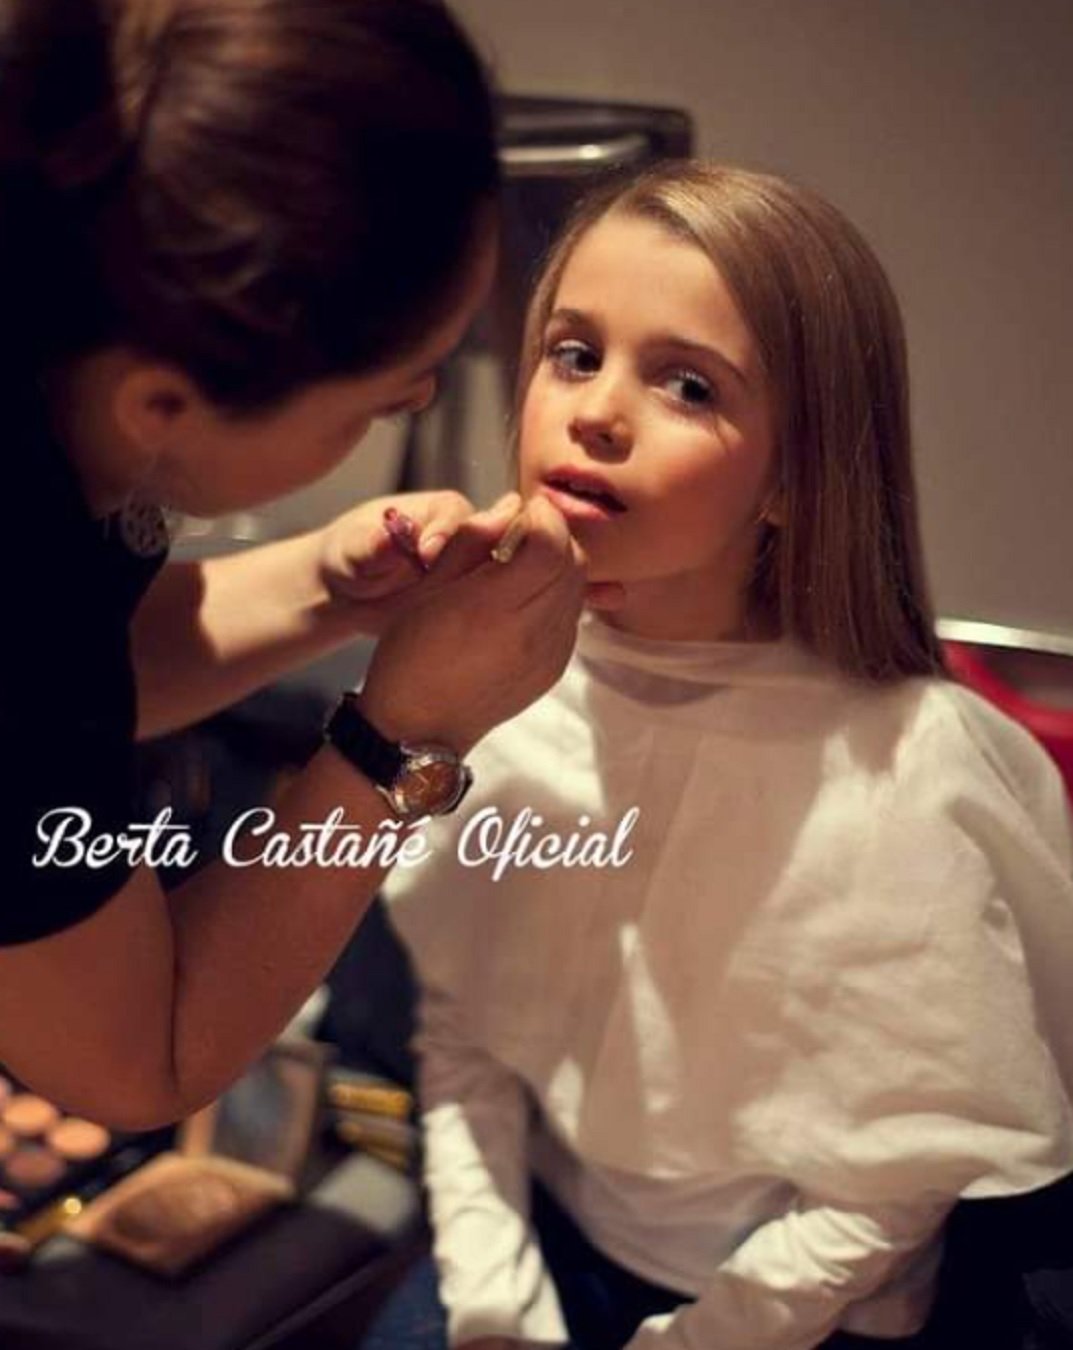 Berta Castañé maquillant se   Facebook